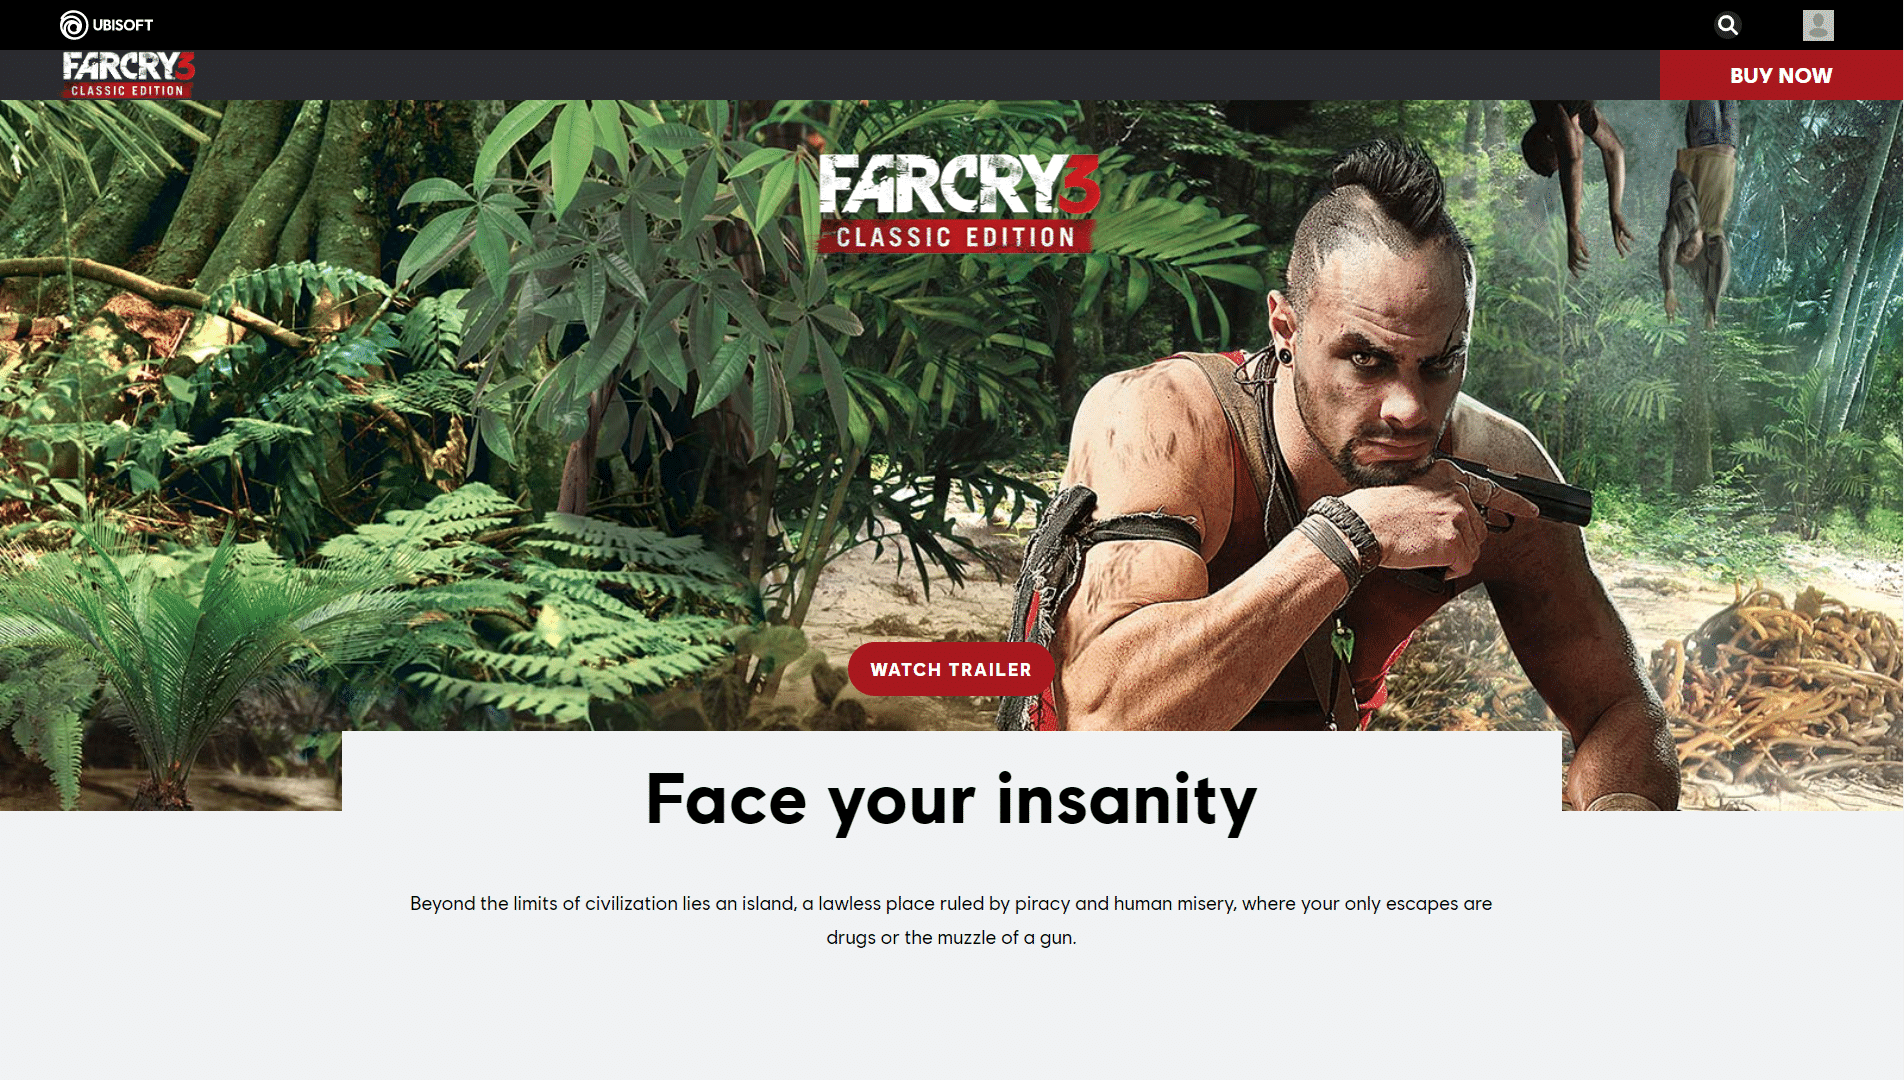 Far Cry 3. ローエンド PC 向けの 36 のベスト オープン ワールド ゲーム